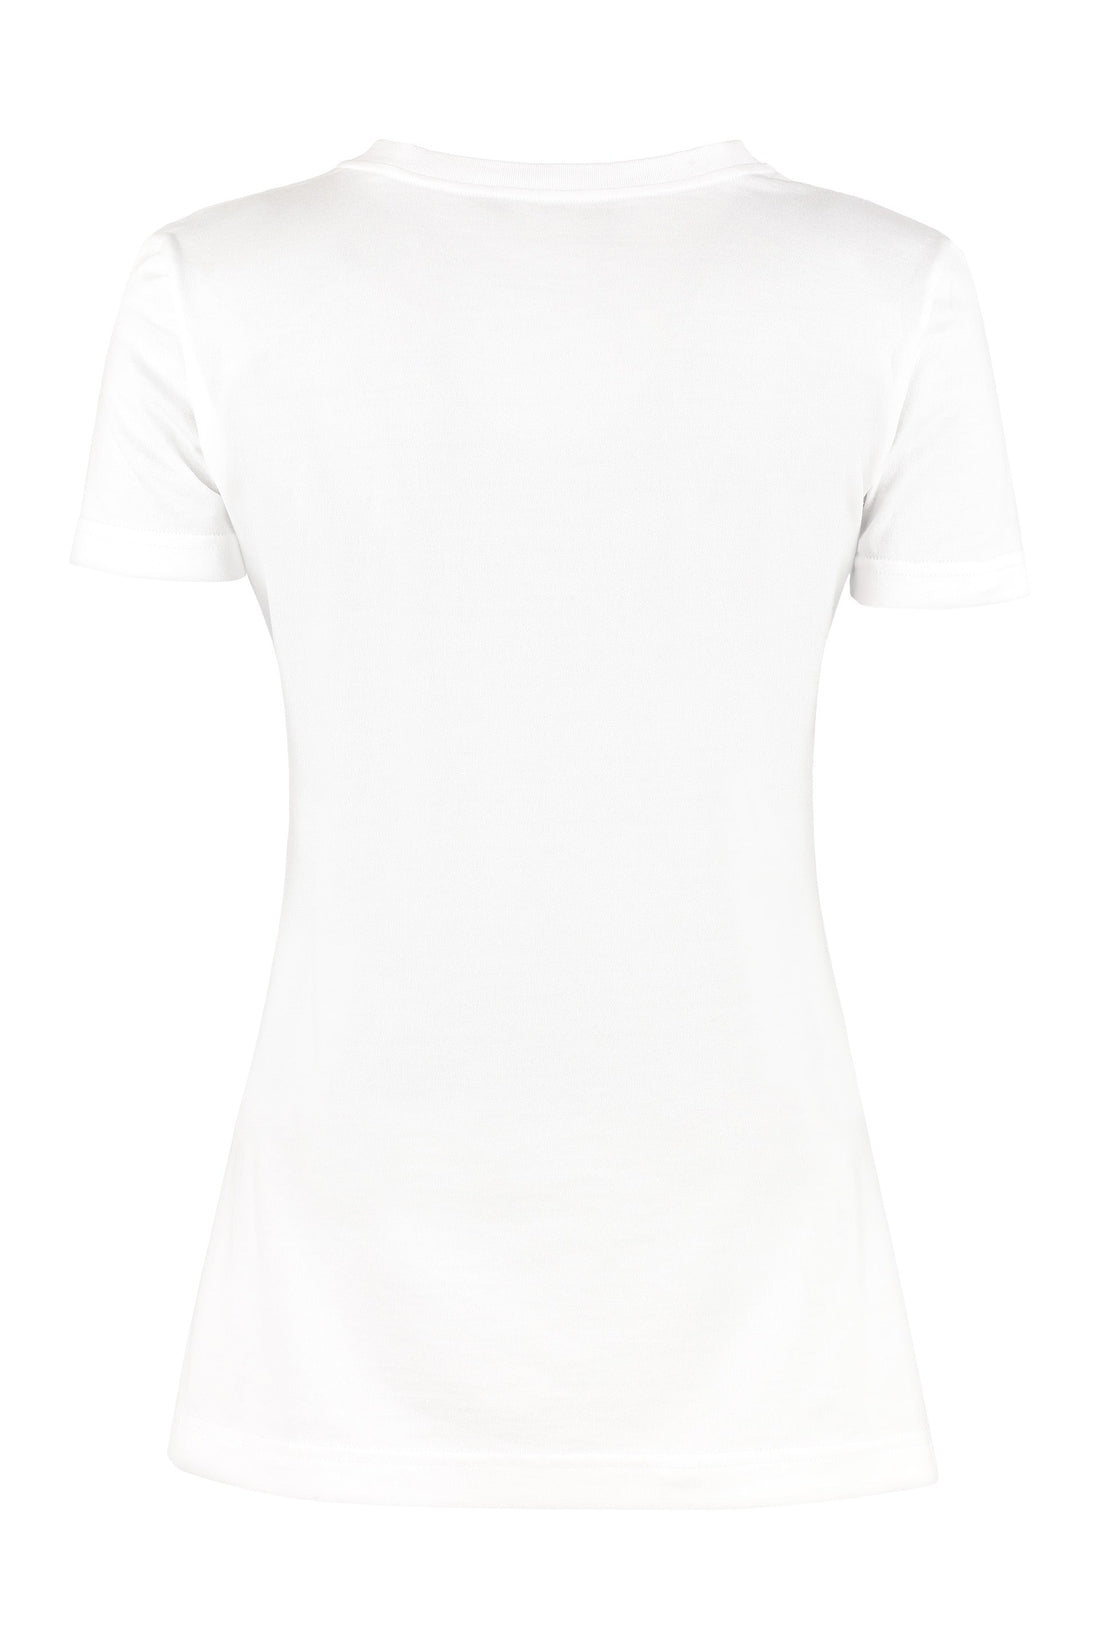 Dolce & Gabbana-OUTLET-SALE-Crew-neck cotton T-shirt-ARCHIVIST